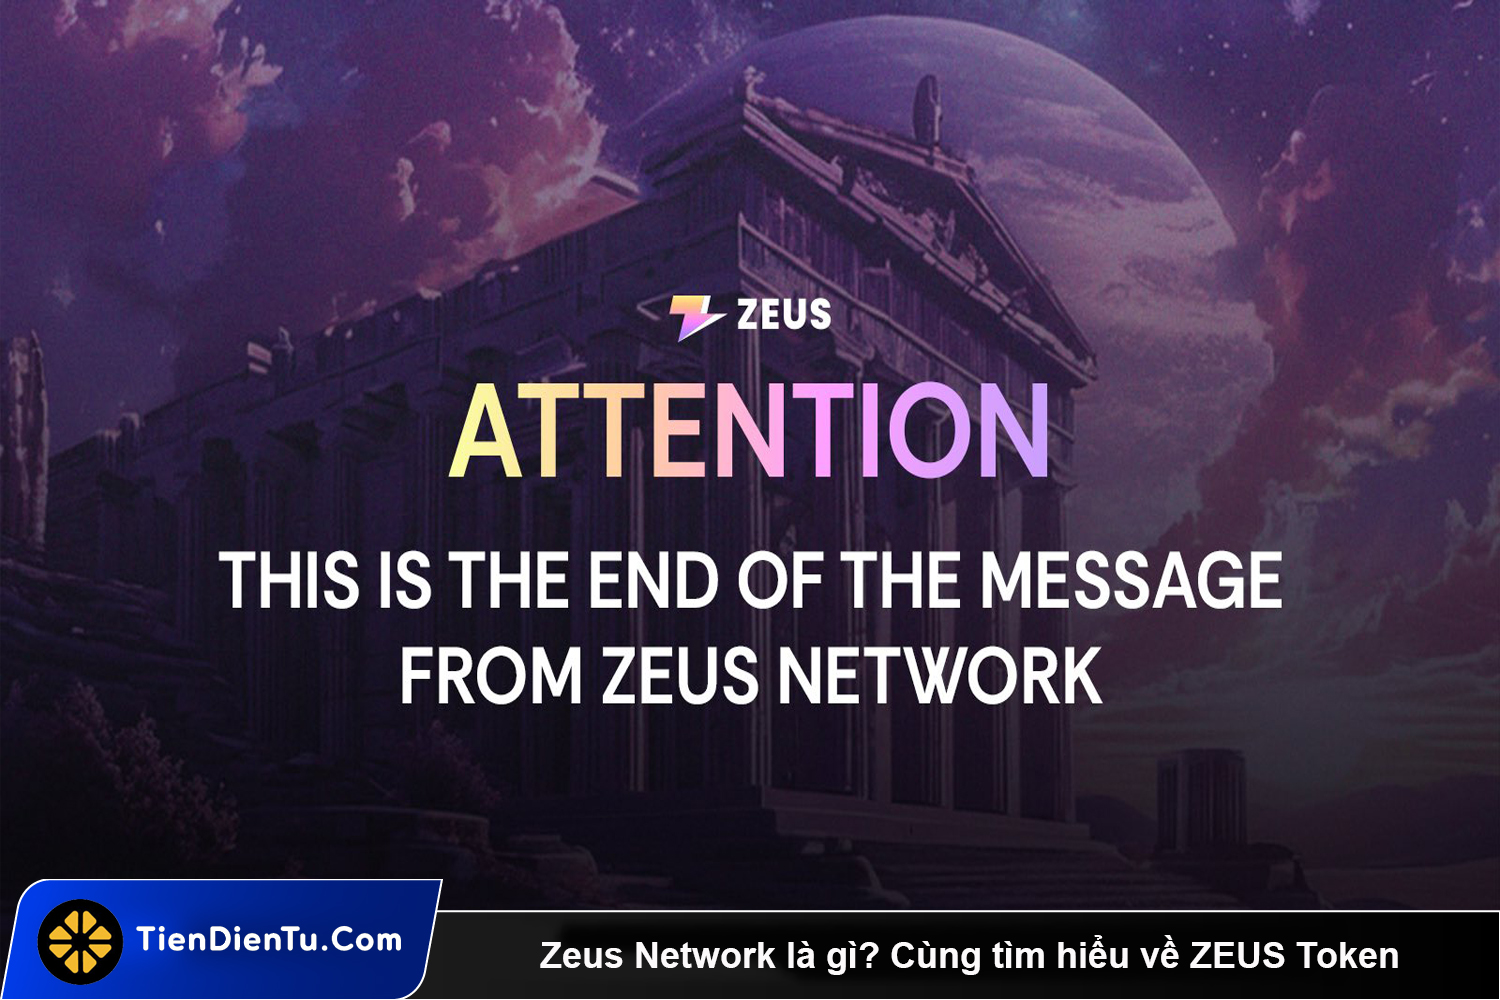 Zeus Network la gi